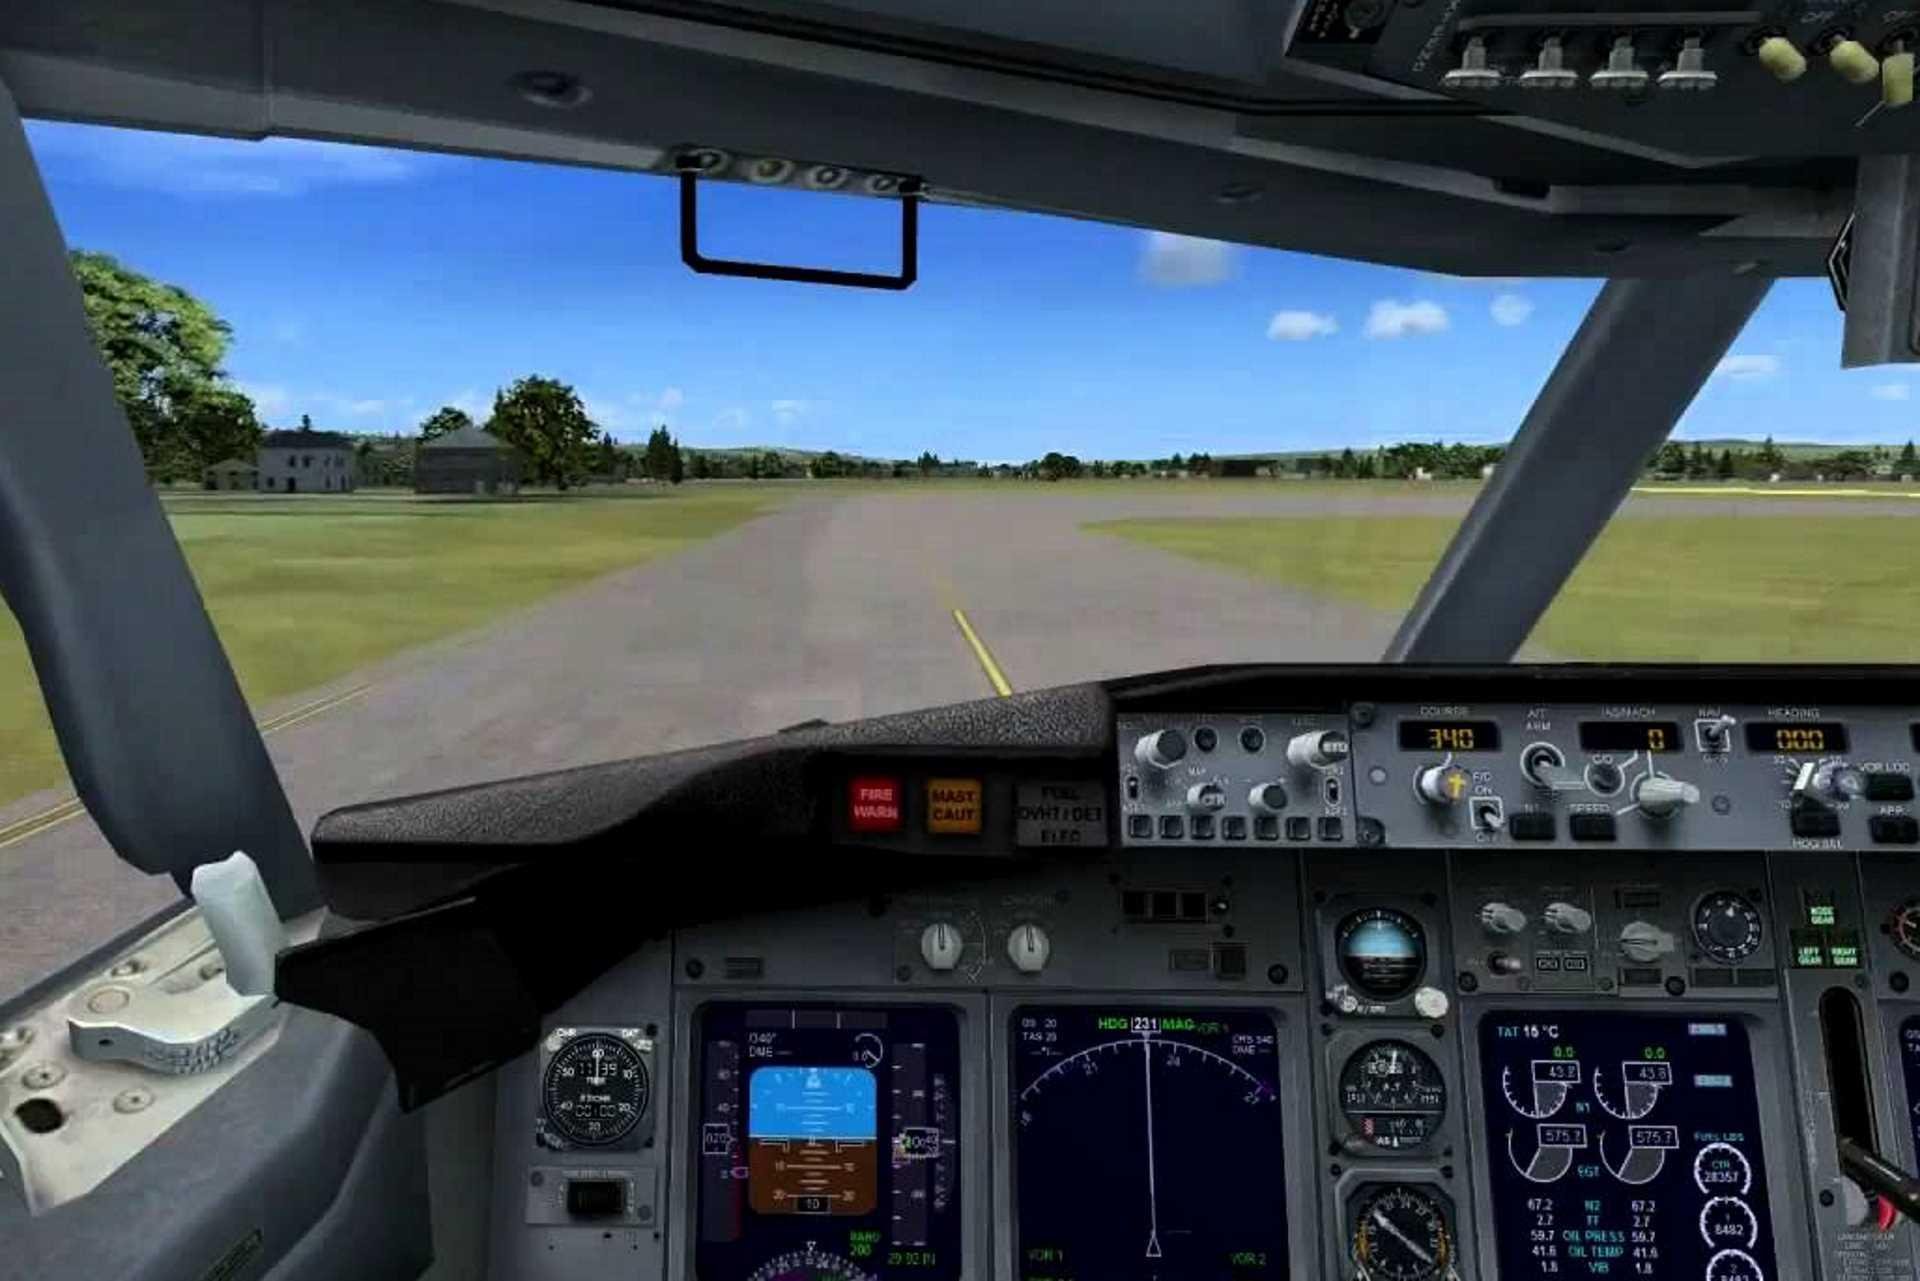 Latest Version Of Flight Simulator